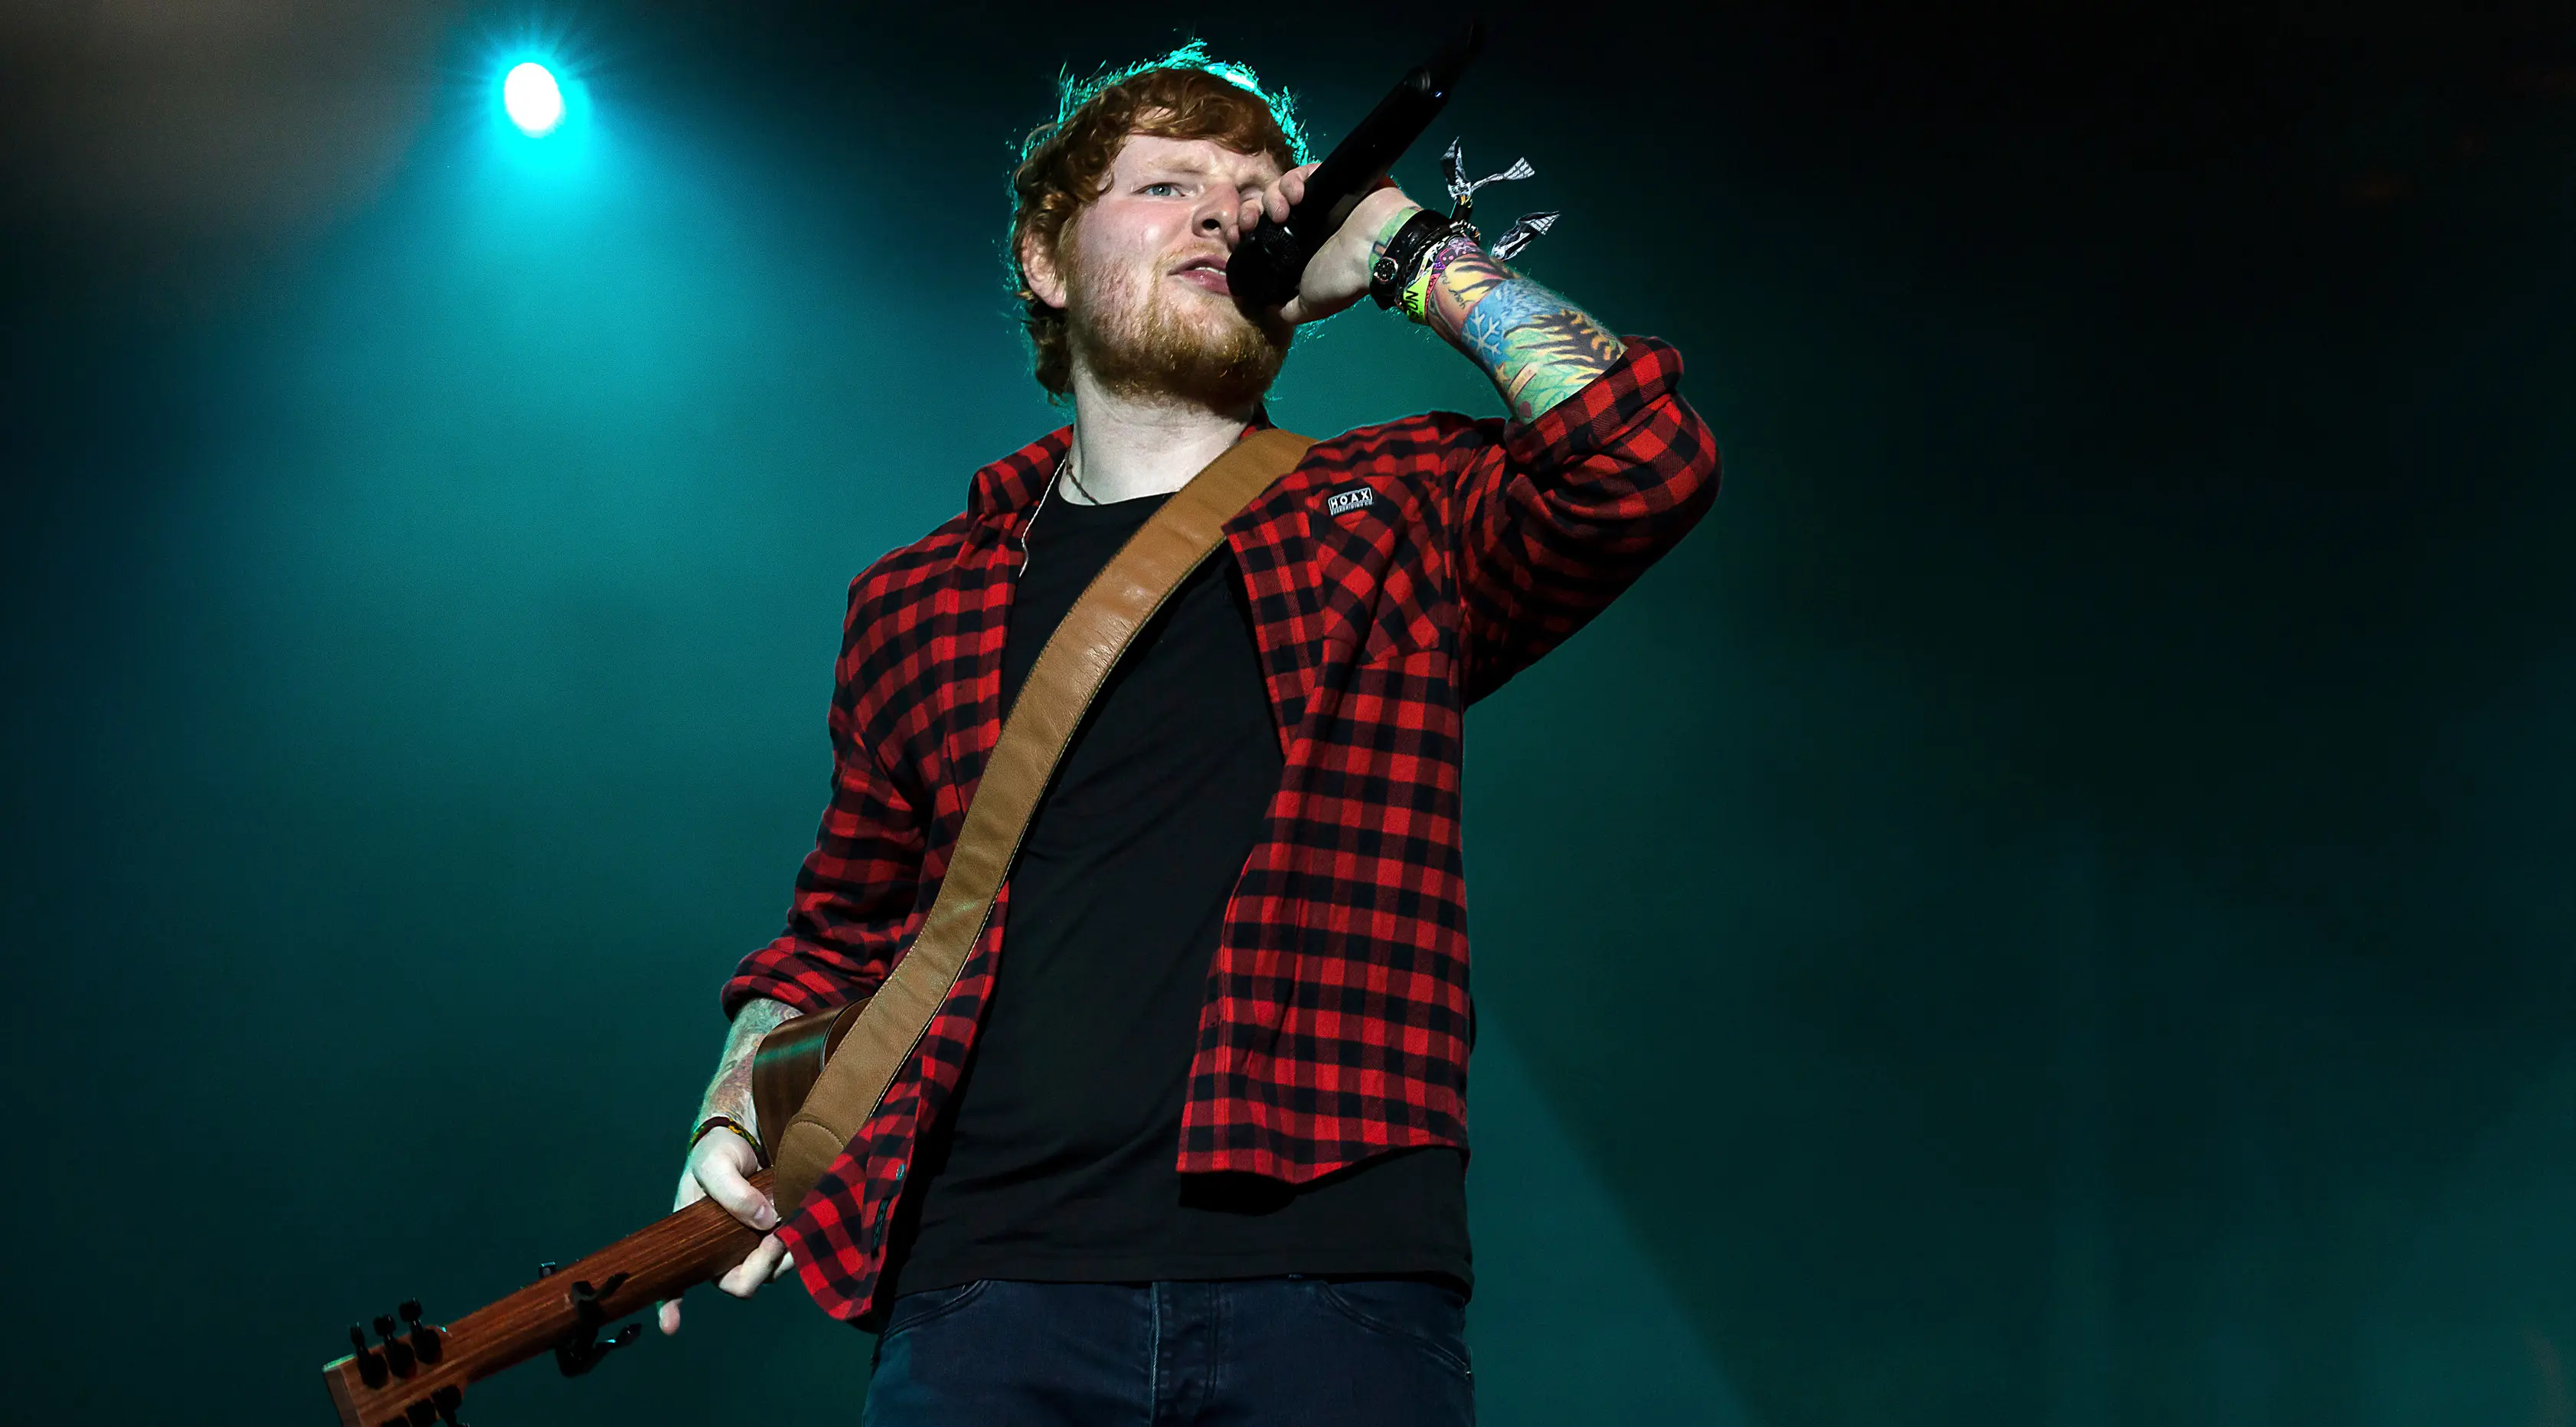 enyanyi Ed Sheeran saat tampil di Festival Glastonbury di Worthy Farm, di Somerset, Inggris (25/6). Solois sekaligus pencipta lagu, Ed Sheeran menjadi salah satu headliner paling ditunggu di Glastonbury Festival 2017. (Photo by Grant Pollard/Invision/AP)